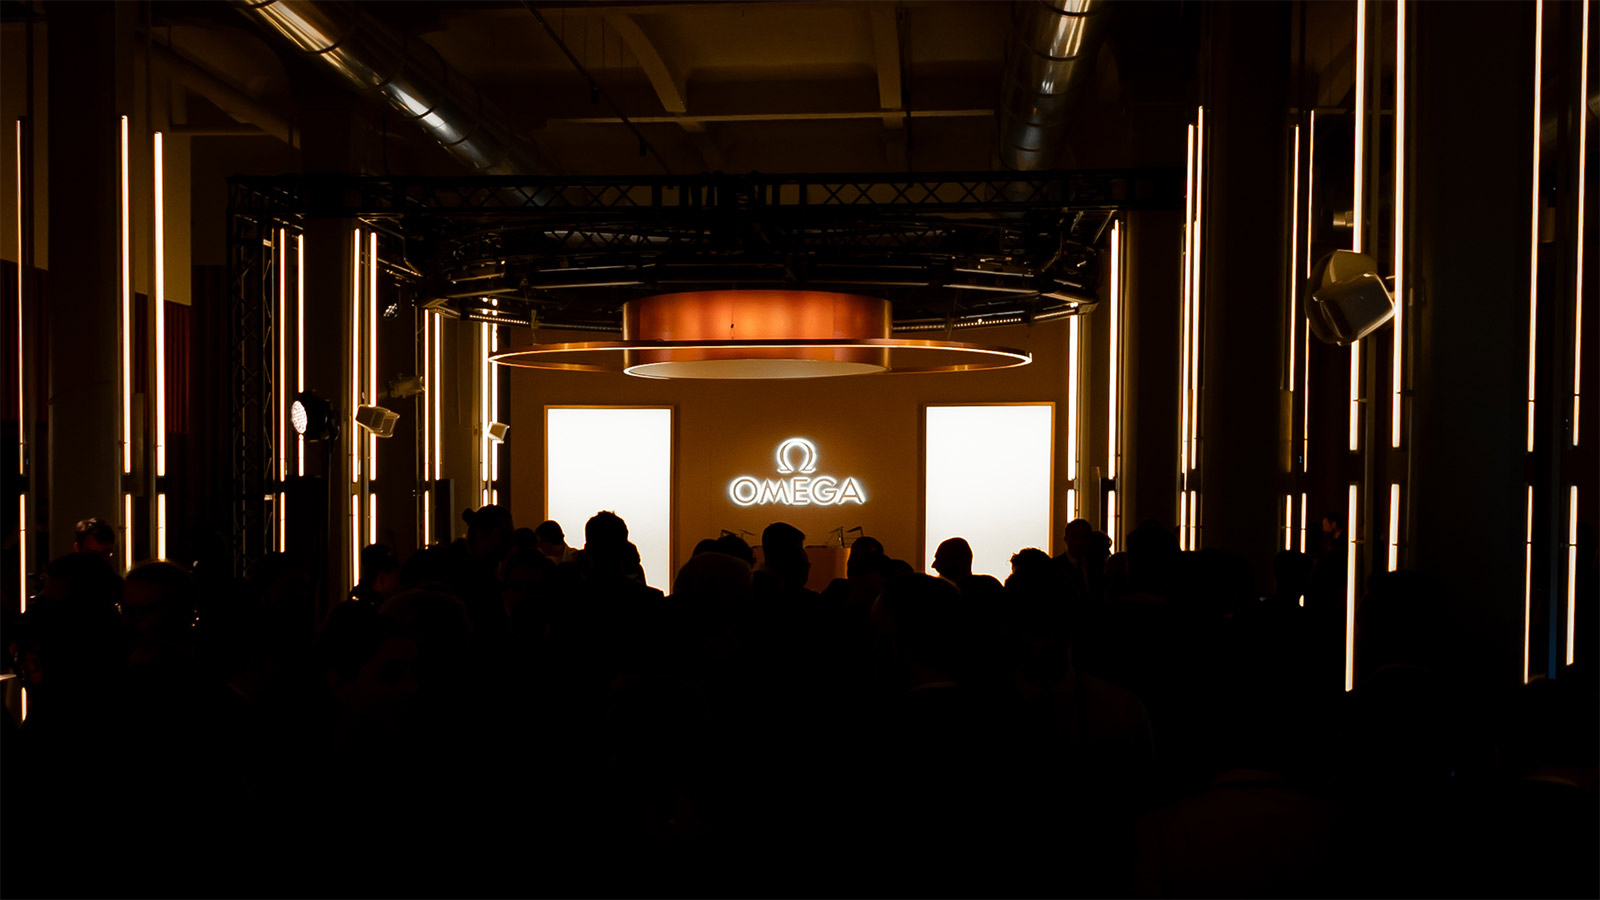 Sternstunde in Mailand: Omega präsentiert neue Modelle